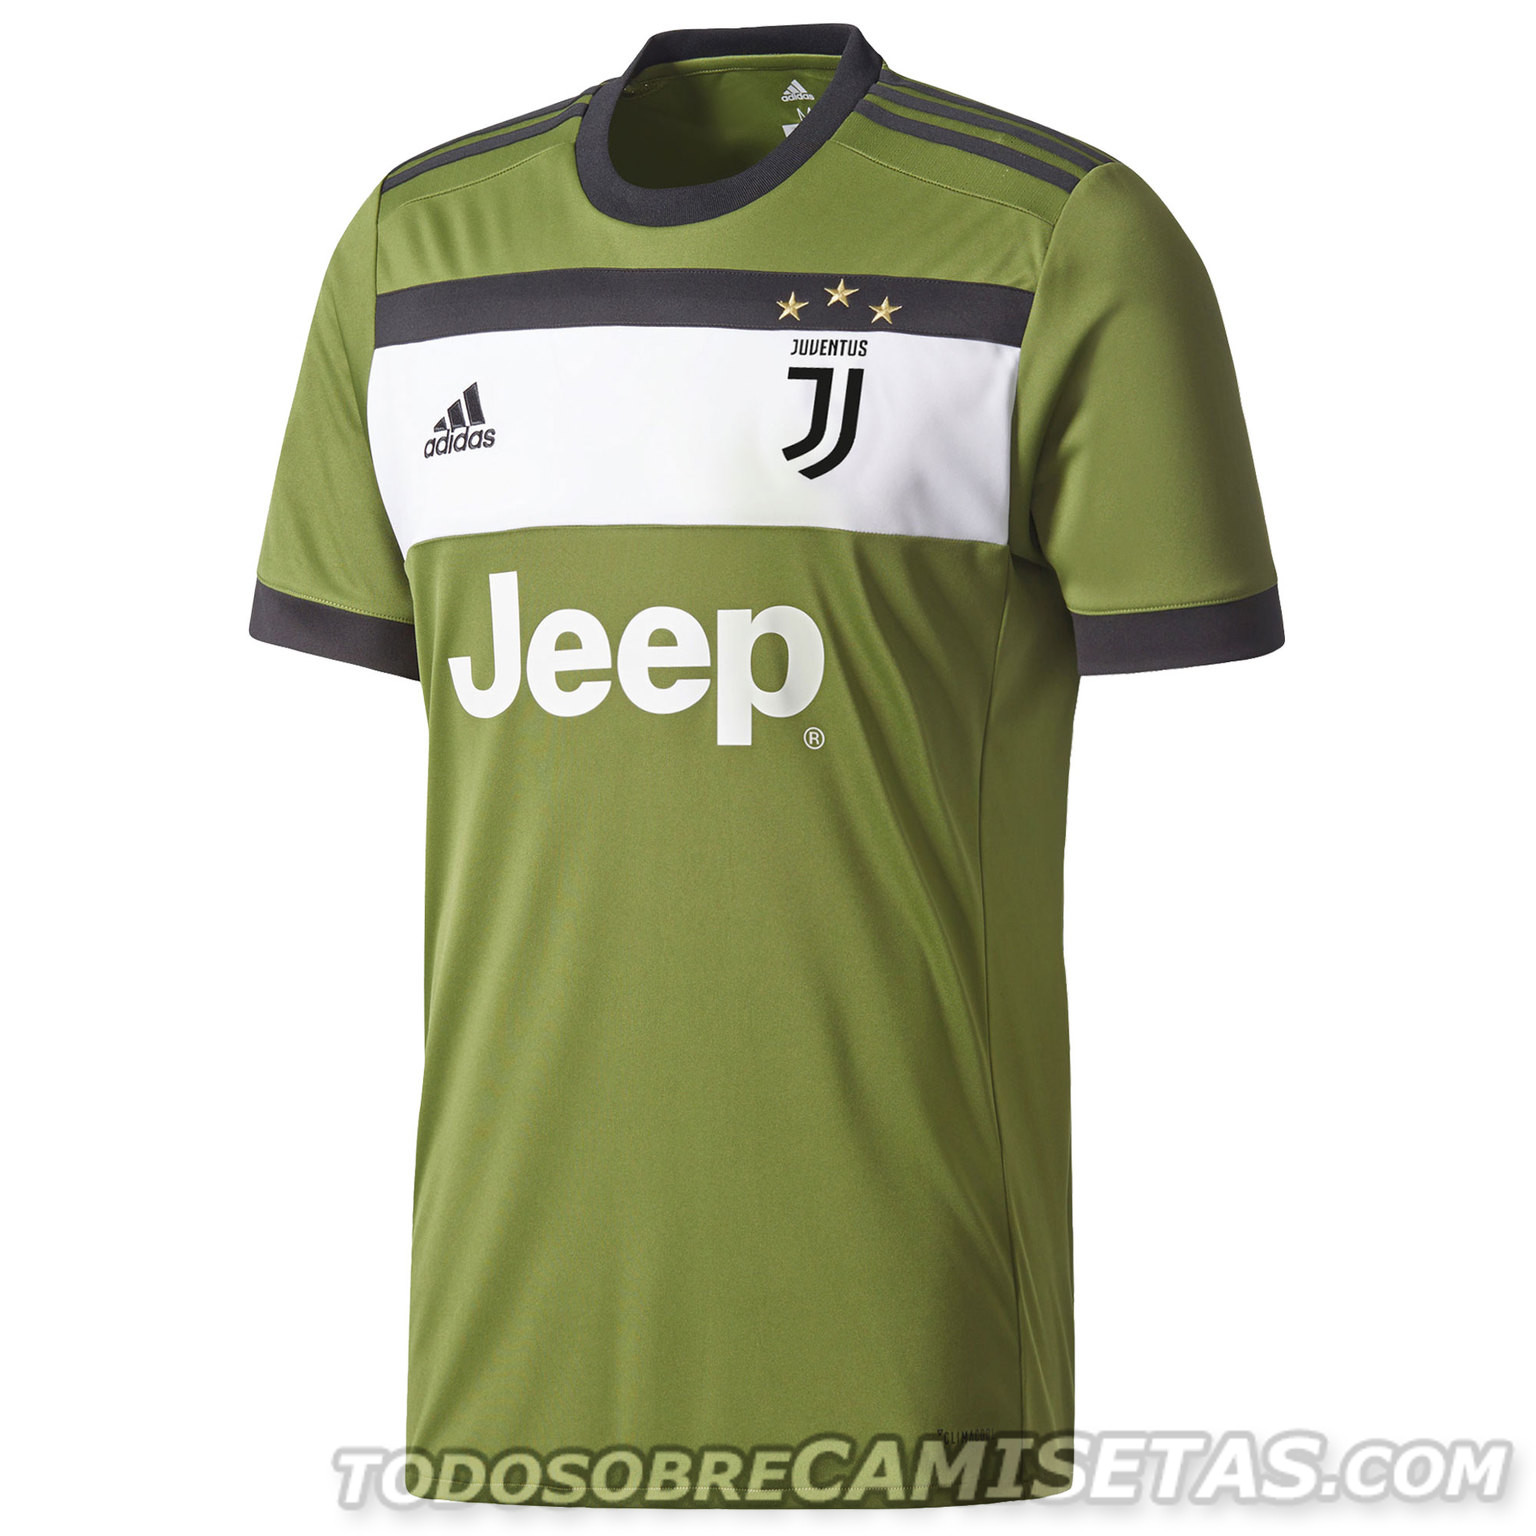 Juventus FC 2017-18 adidas Third Kit